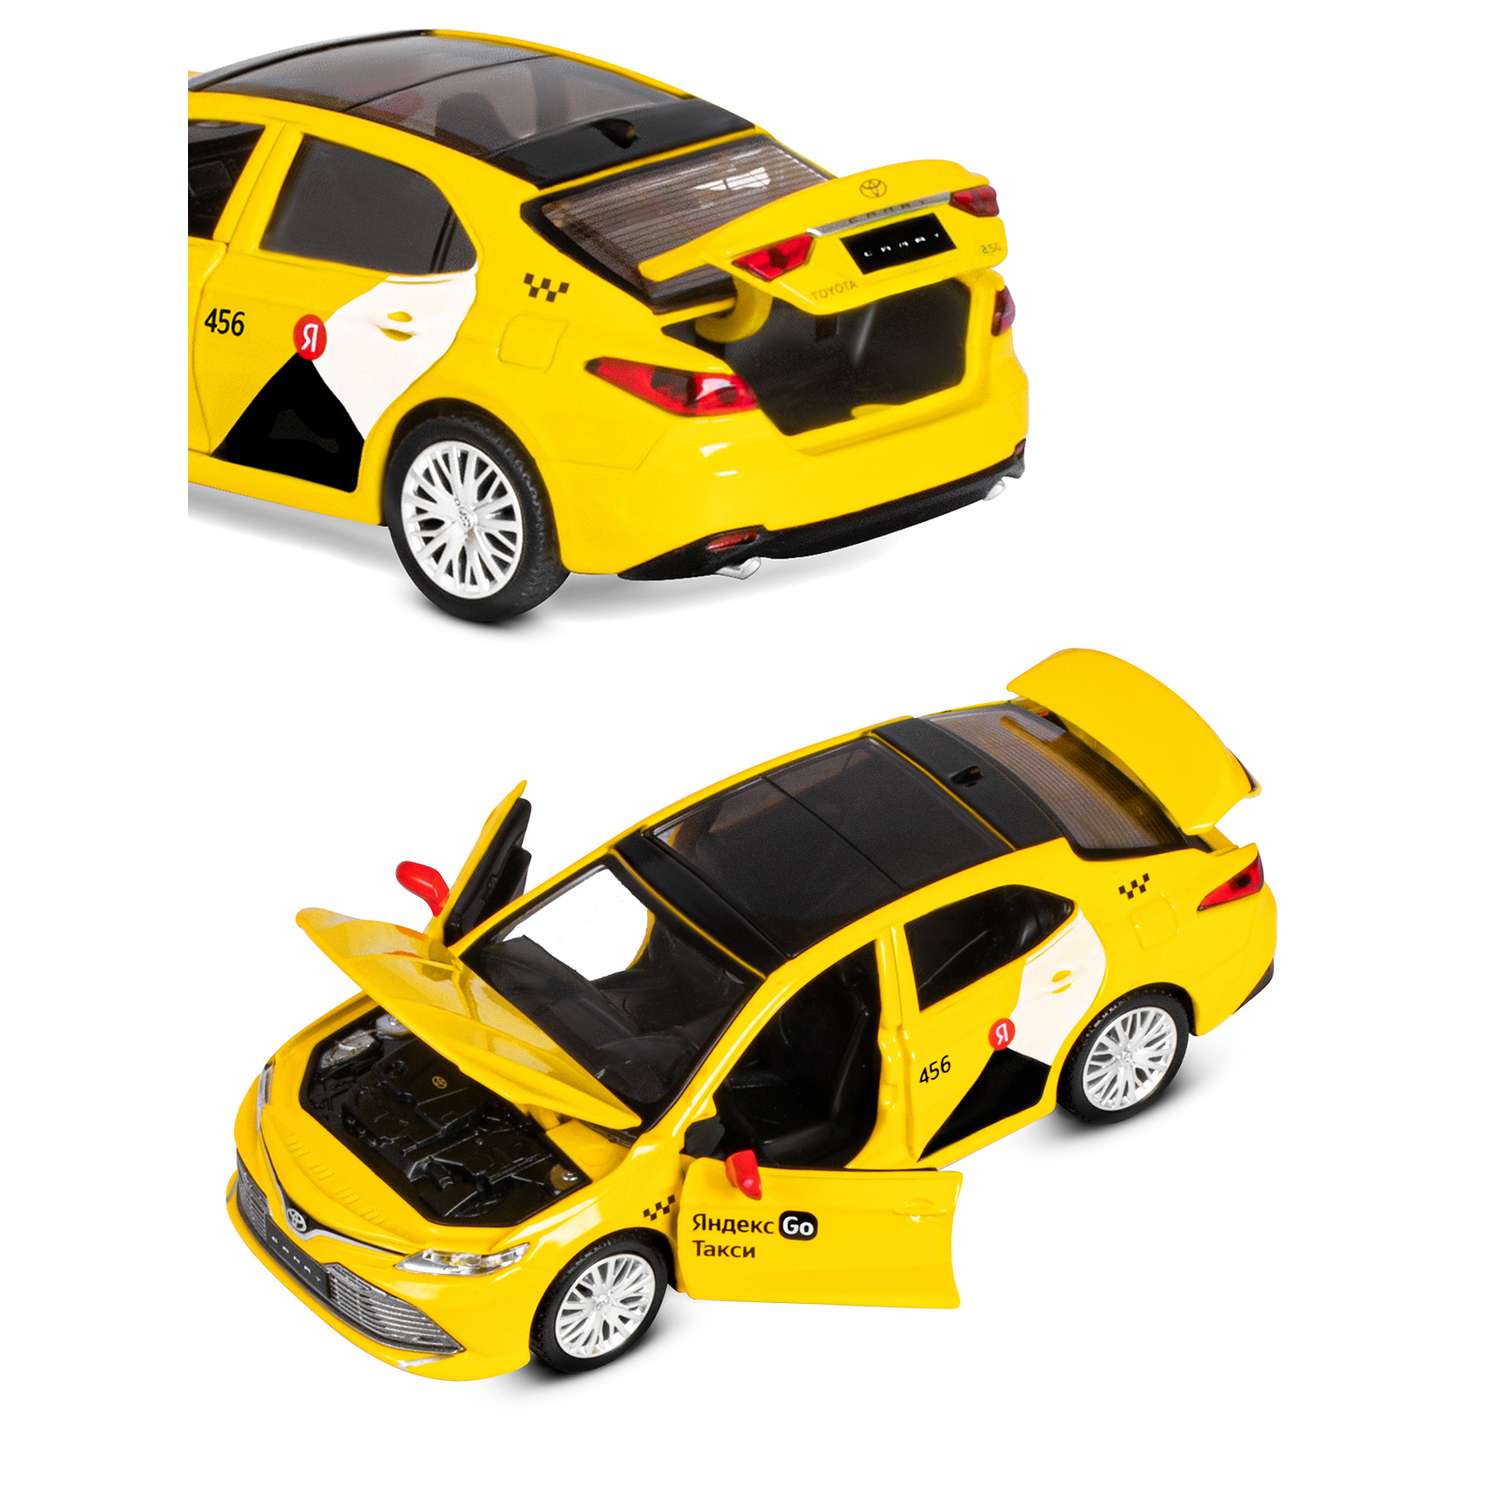 Машинка металлическая Яндекс GO игрушка детская Toyota Camry цвет желтый Озвучено Алисой JB1251482 - фото 10